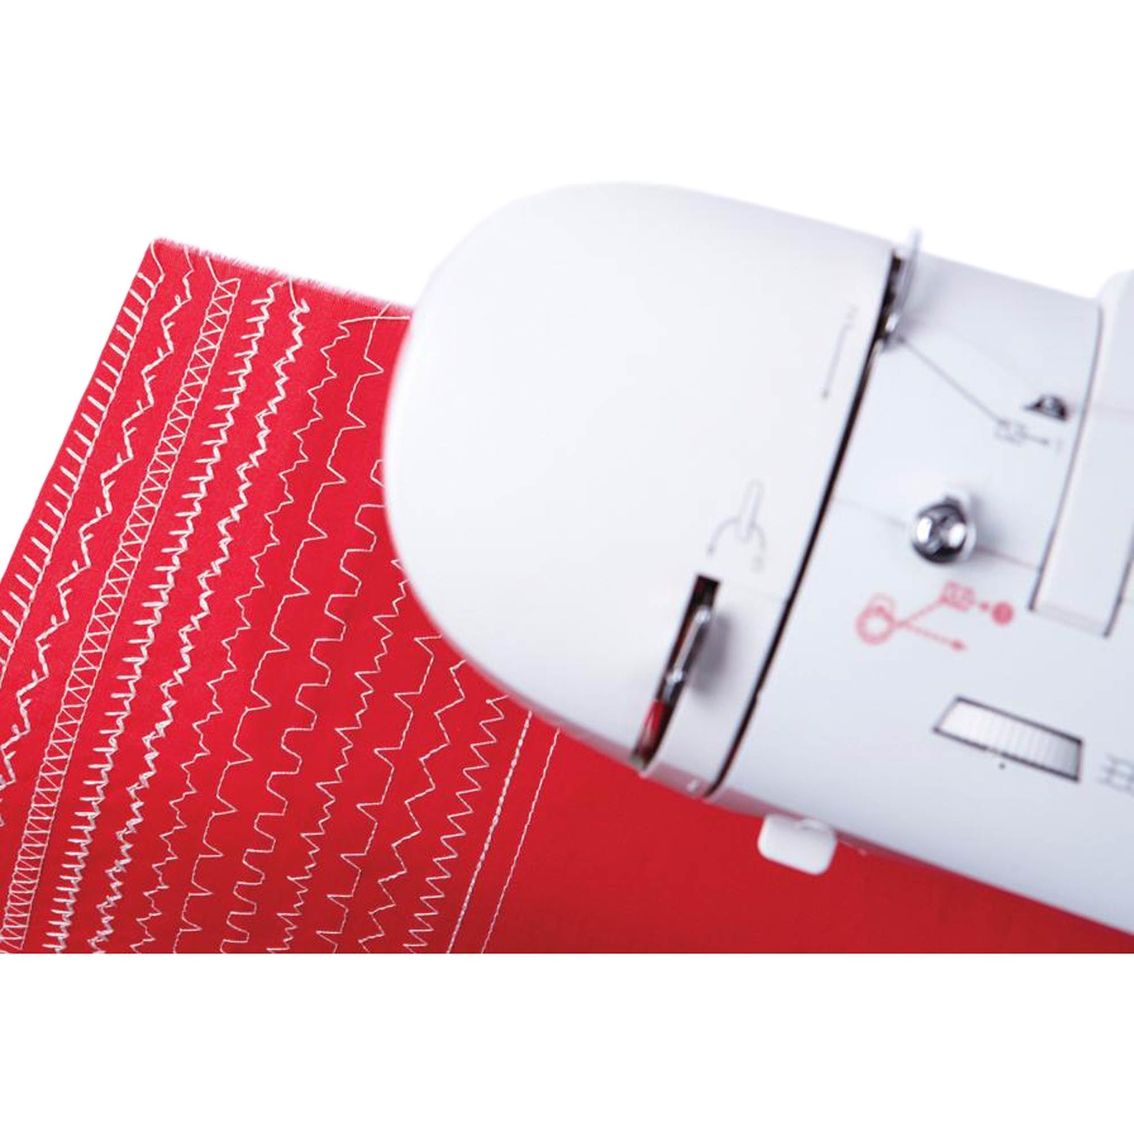 Singer Fashion Mate 3333 Sewing Machine - Image 3 of 6